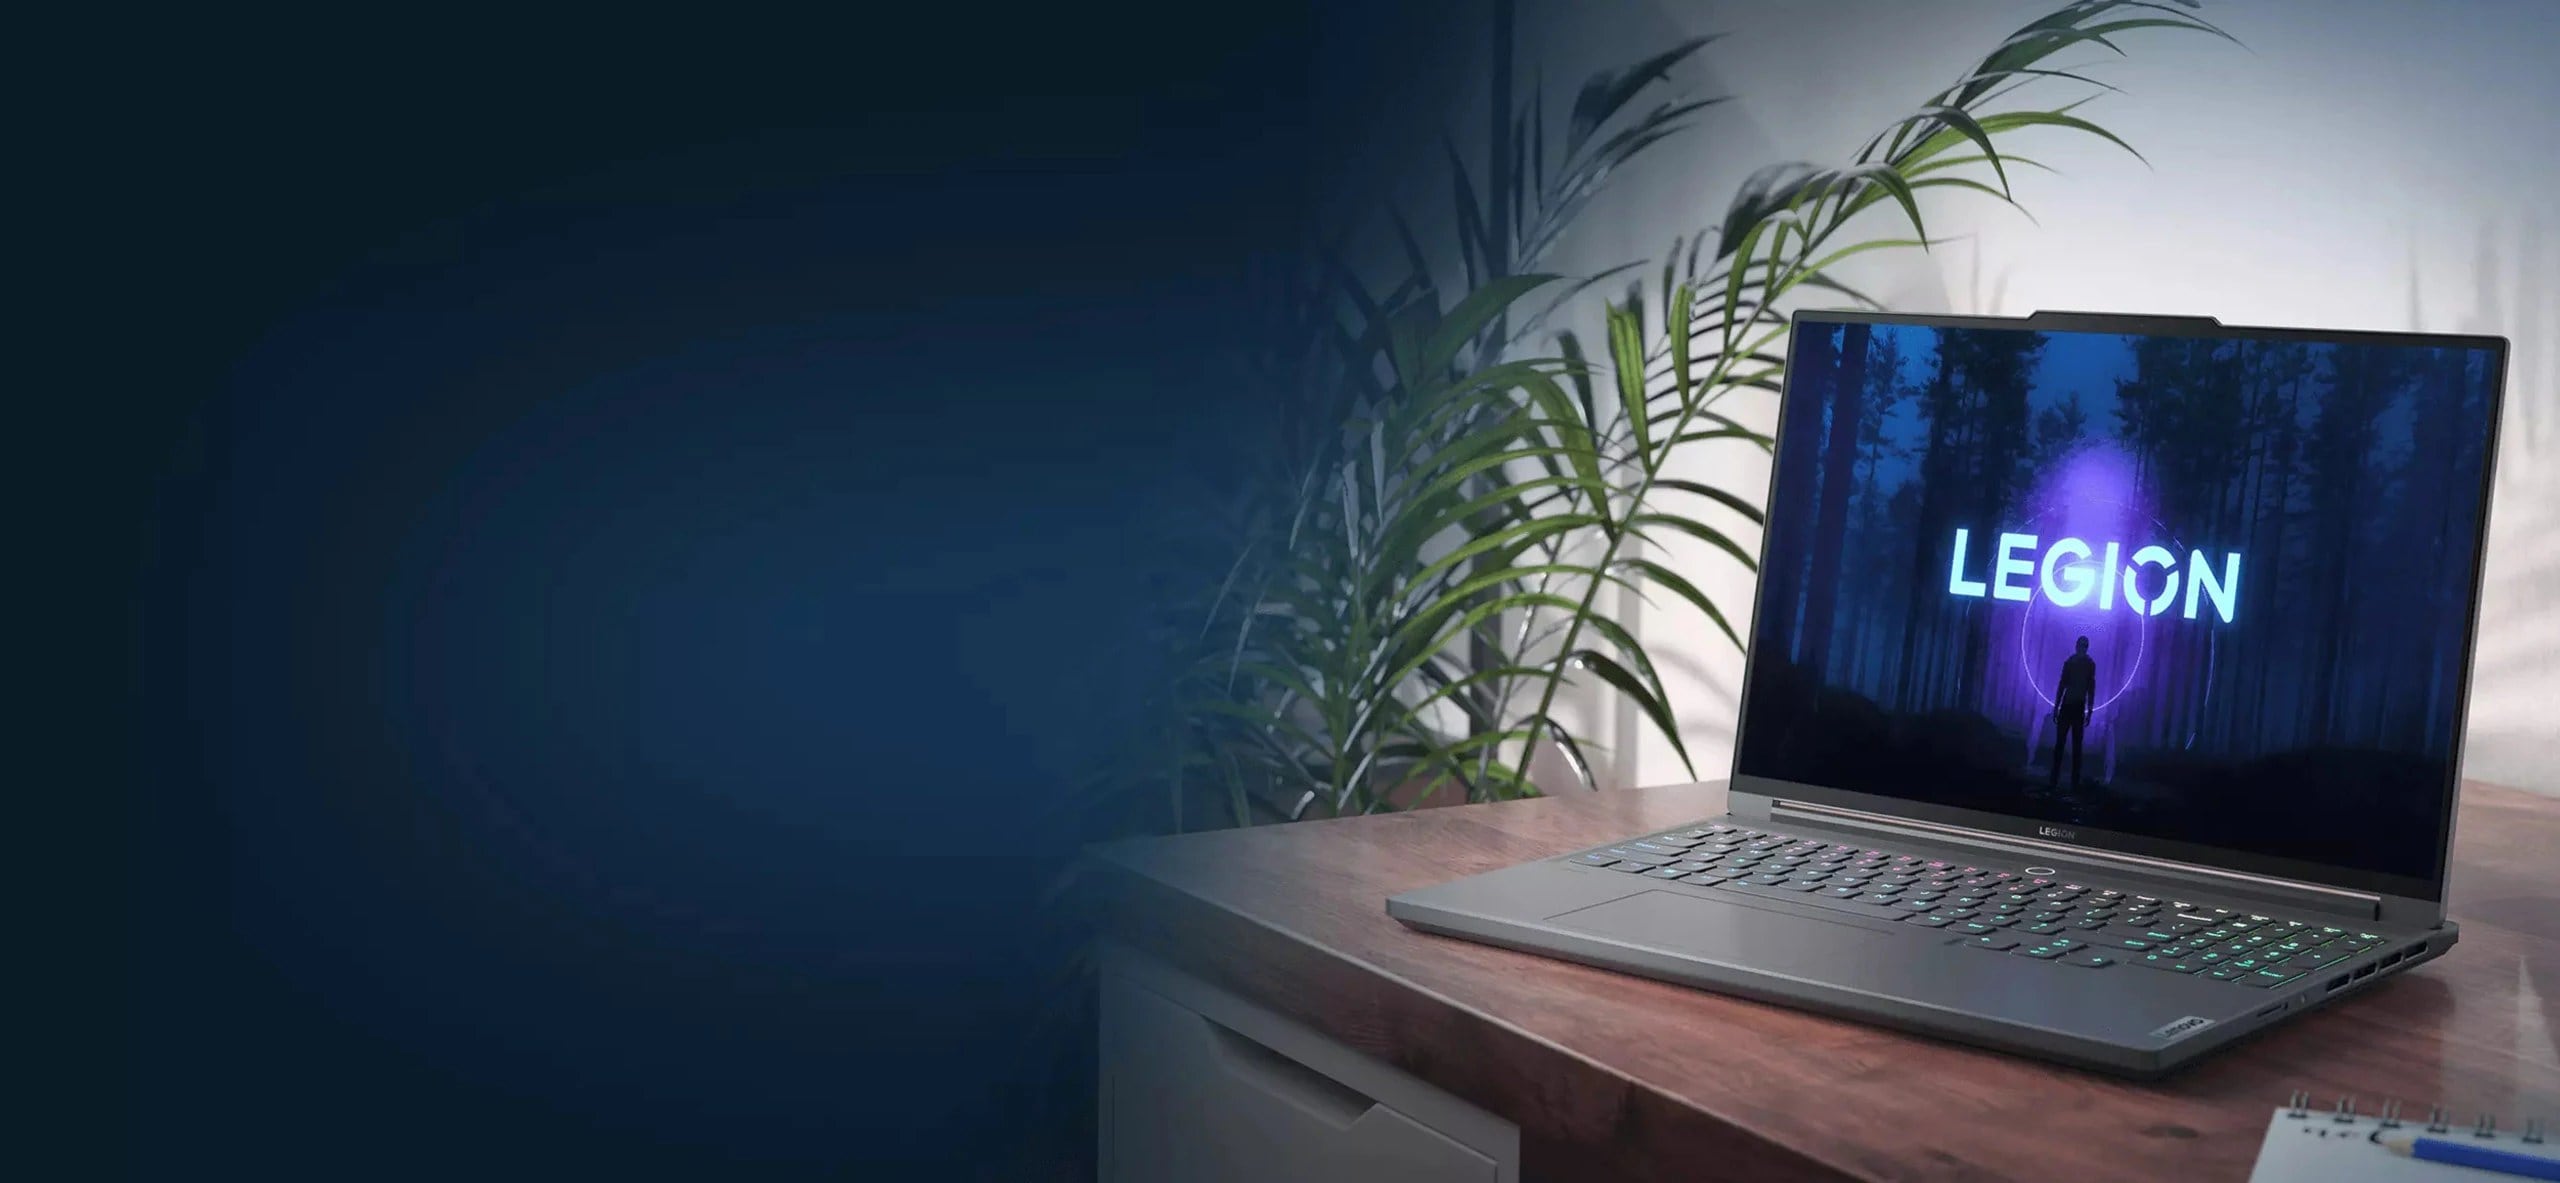 Снимок в три четверти средним планом ноутбука Lenovo Legion Slim 7, установленного на столе и повернутого экраном влево, с видимым на дисплее логотипом Legion и с растениями слева от стола на заднем плане.